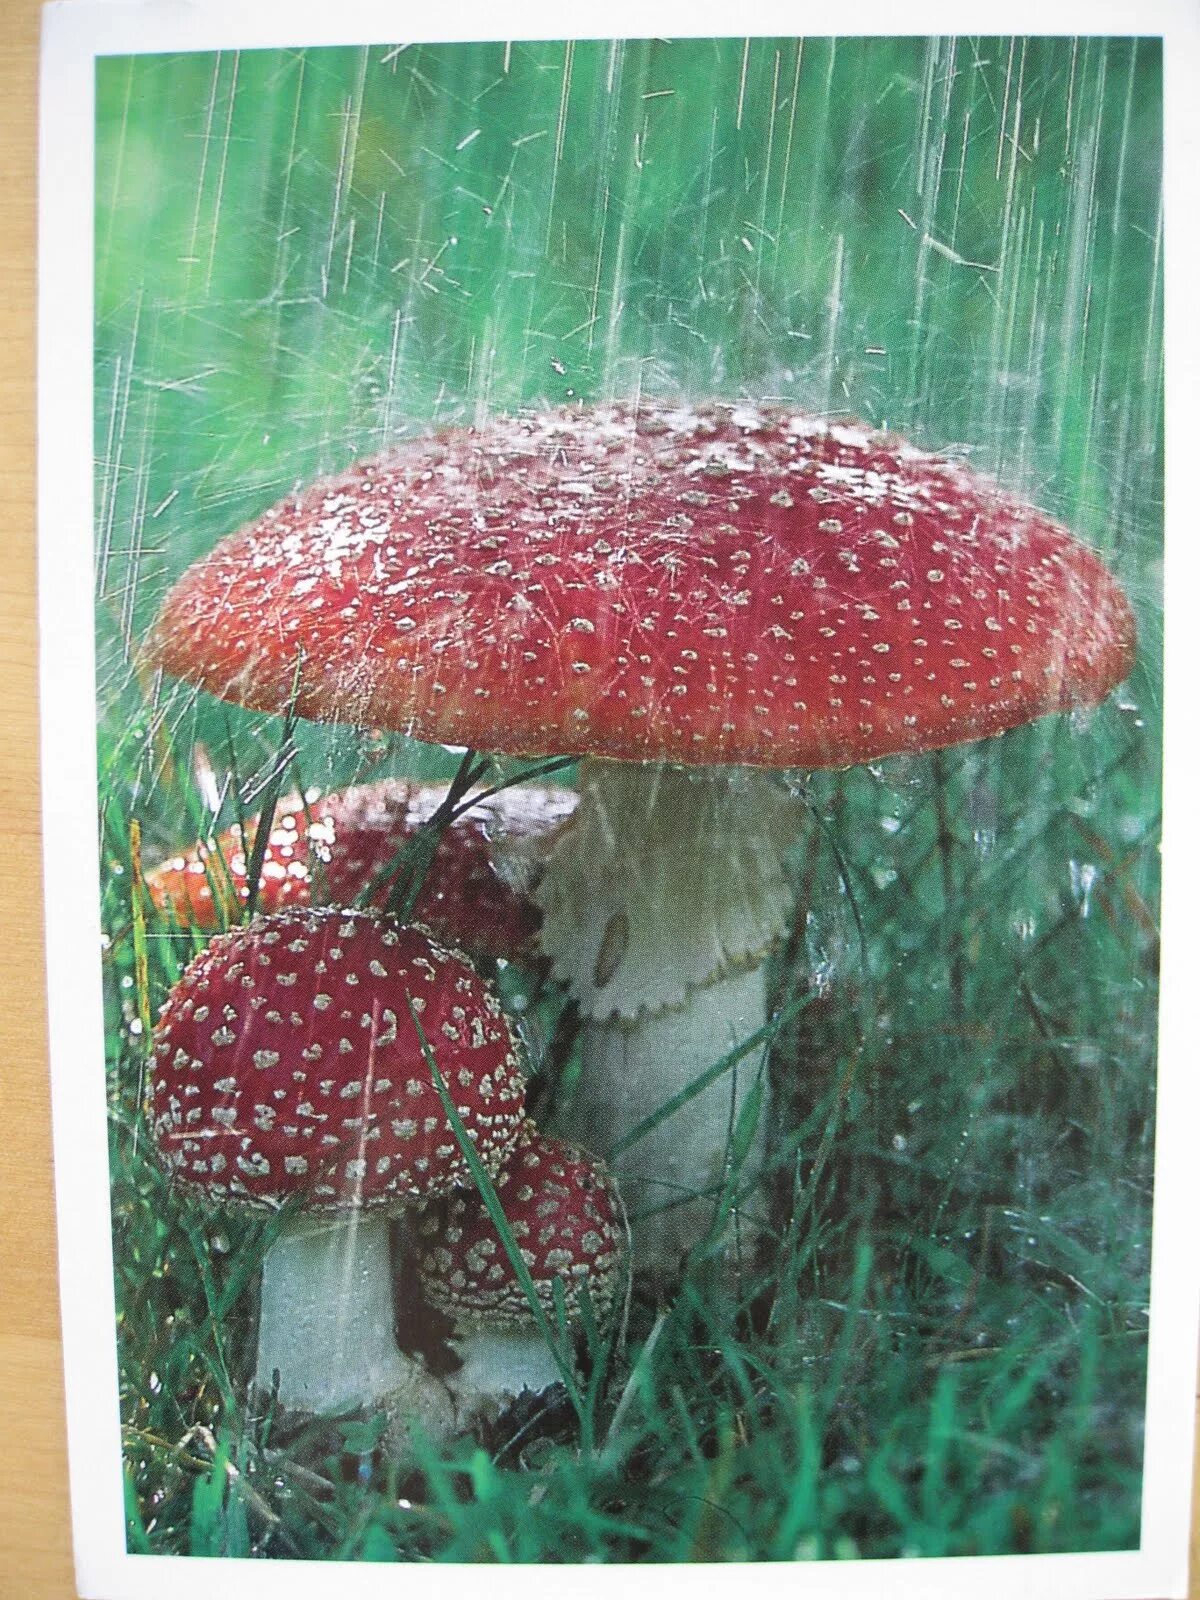 Дождя больше грибов. Грибной дождь. Грибы под дождем. Мухомор под дождем. Летний грибной дождь.